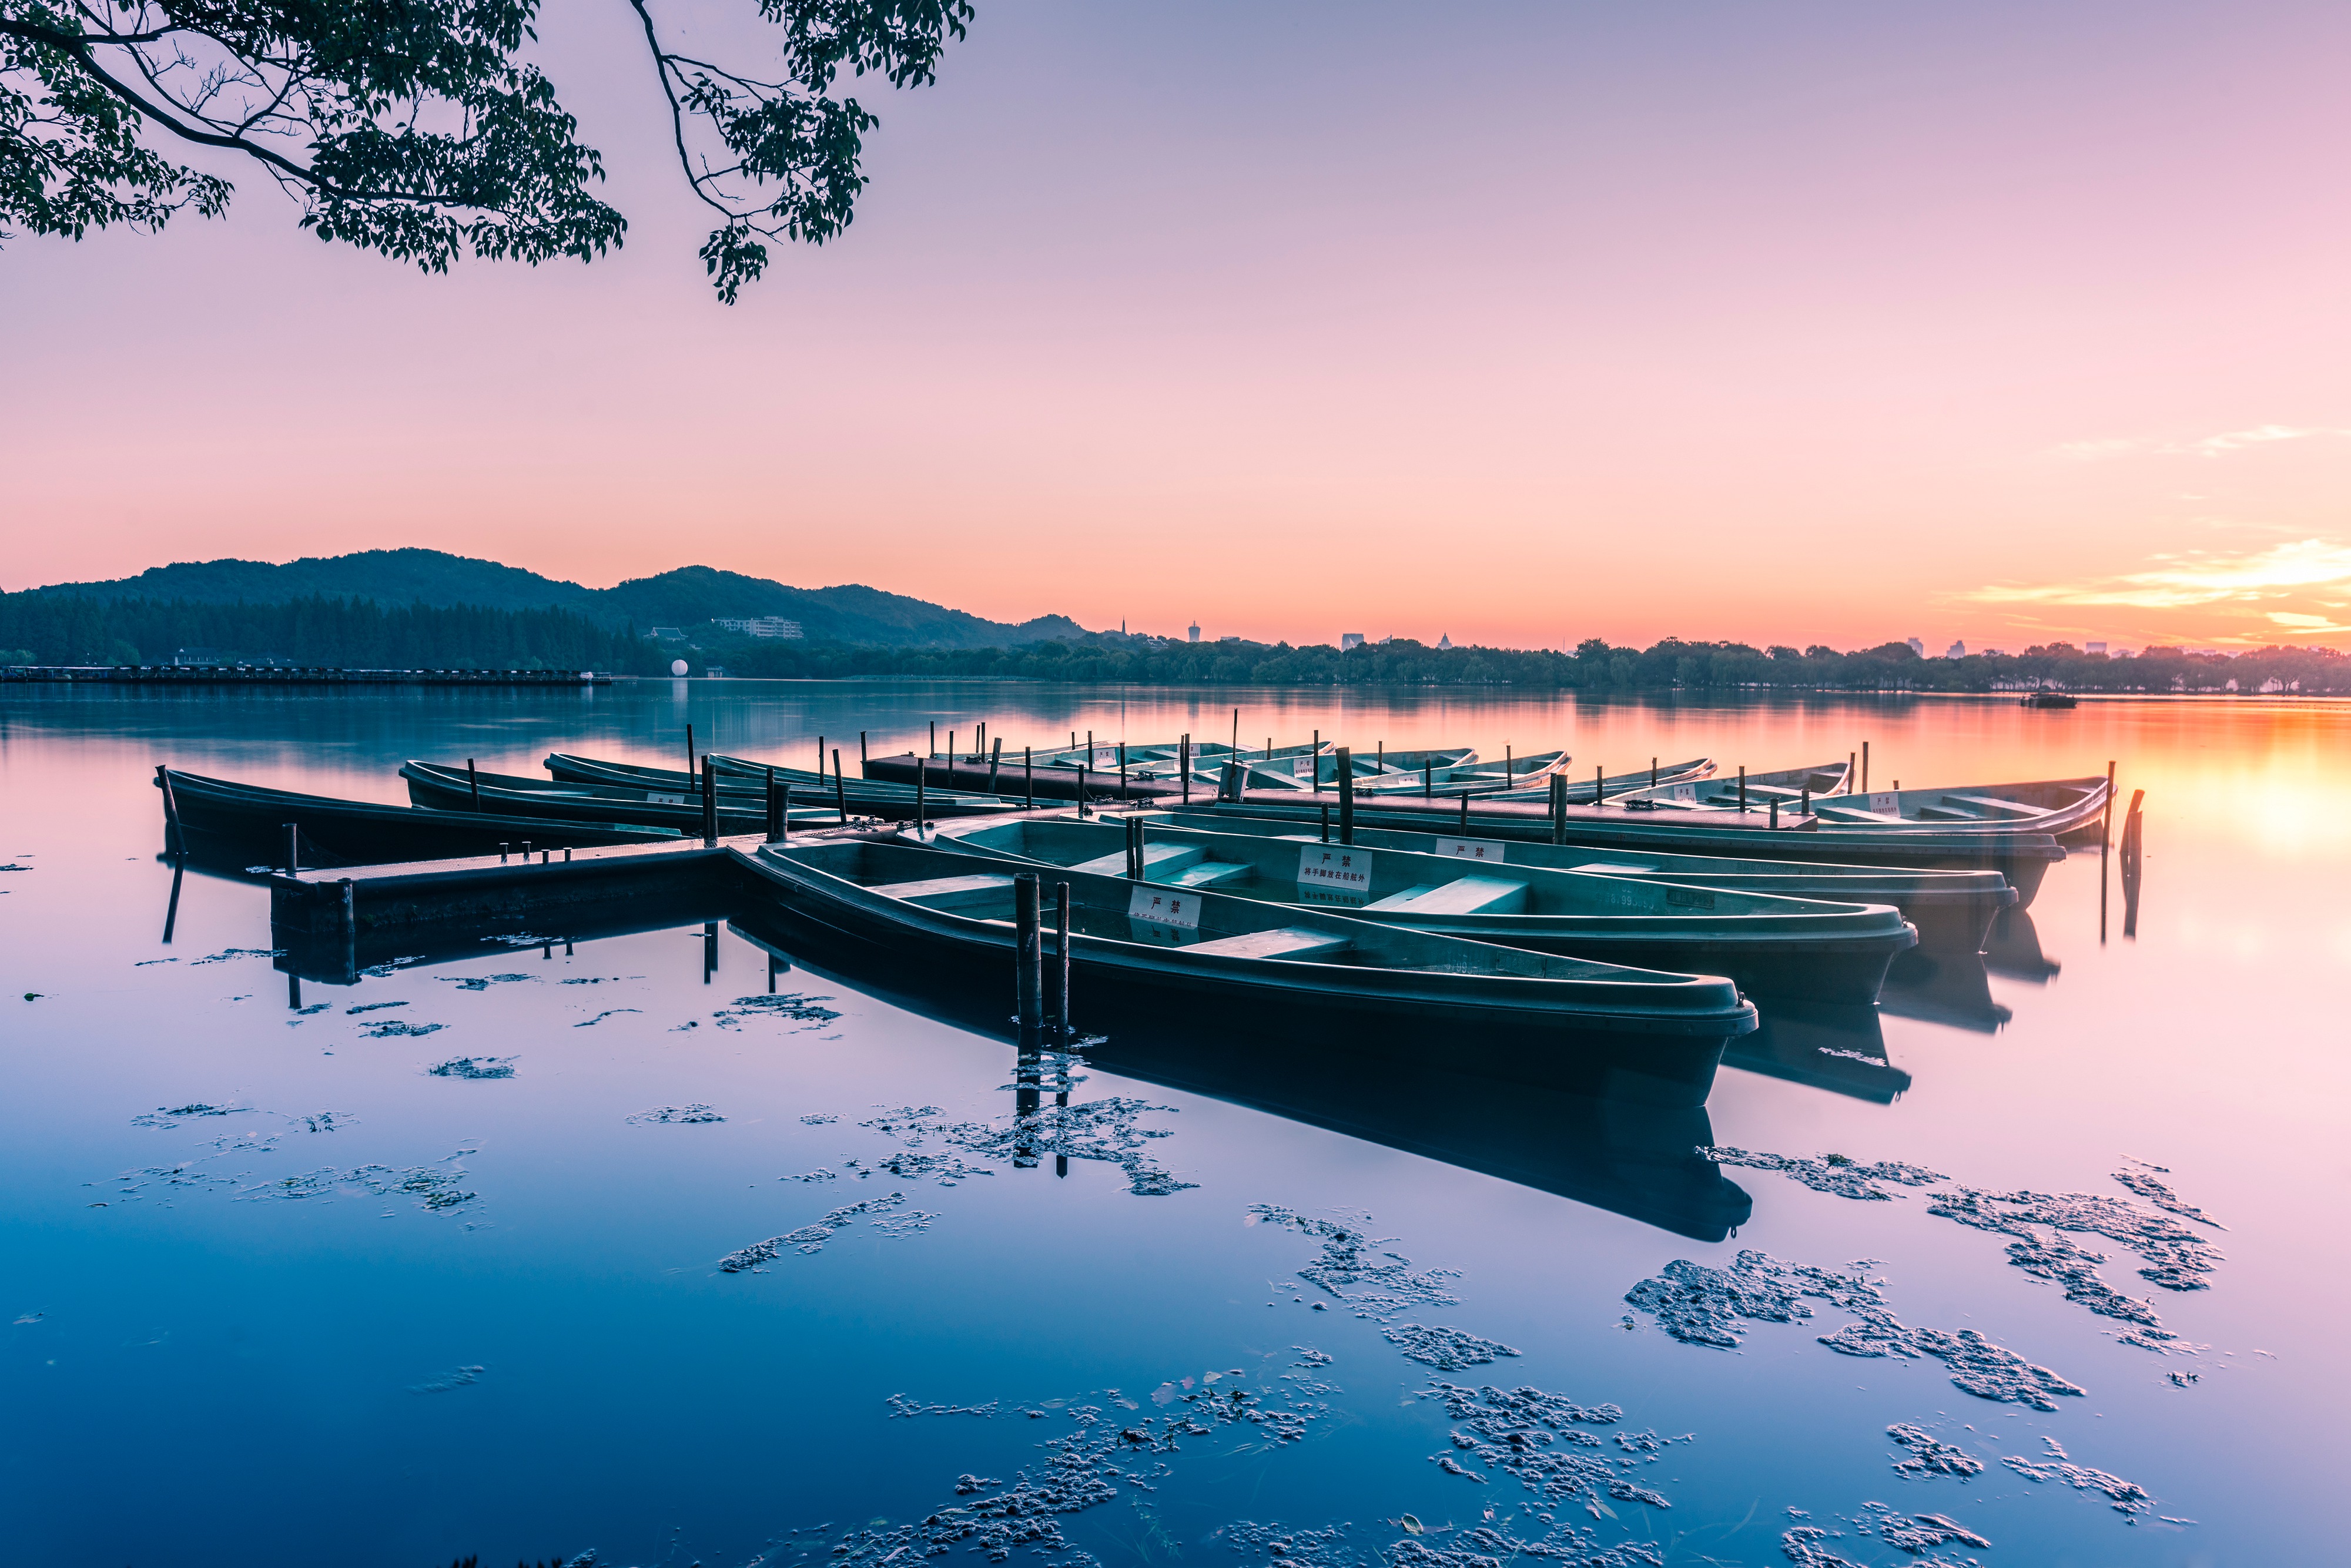 【迎G20】盛夏西湖 感受荷花最美的气韵 园林资讯